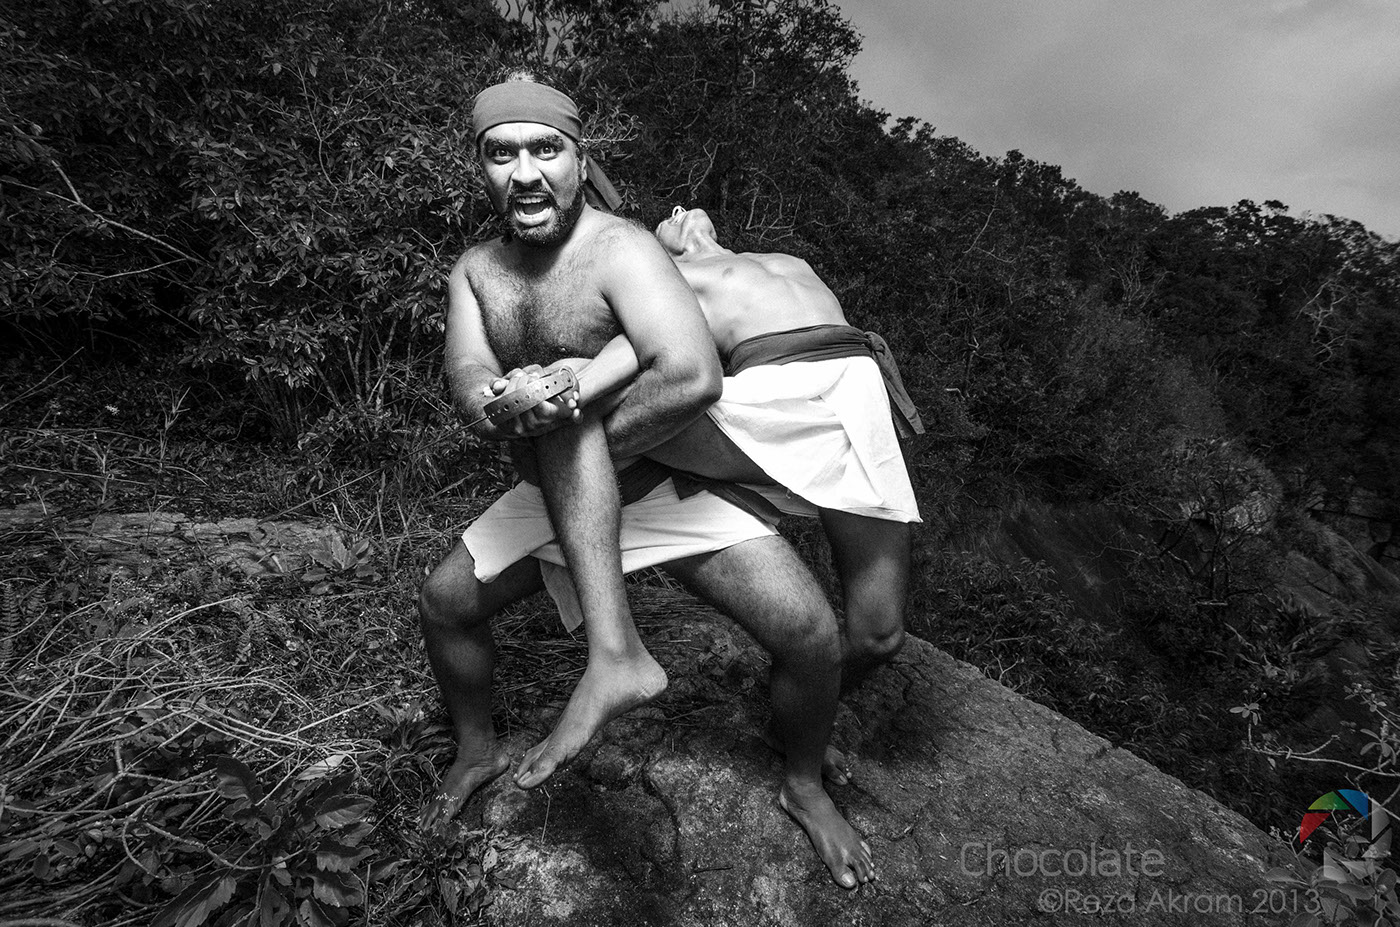 © HotChocolateStudios 2013 ©Reza Akram2013 Angampora Documentary Photography Sri lanka Photo Essay